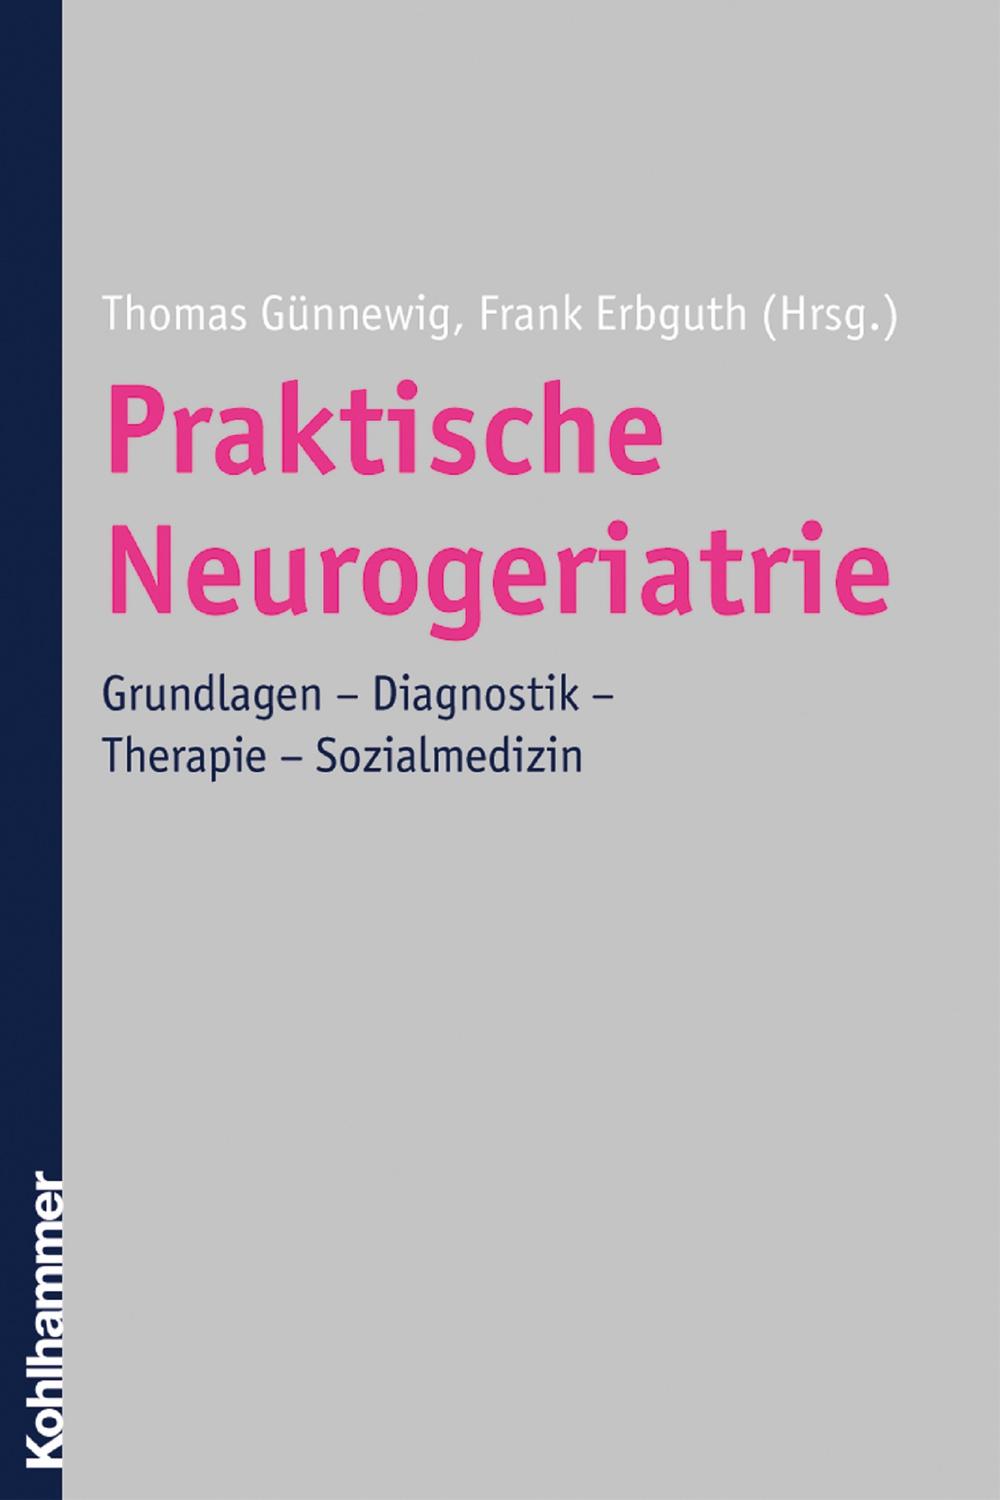 Praktische Neurogeriatrie - Thomas Günnewig, Frank Erbguth